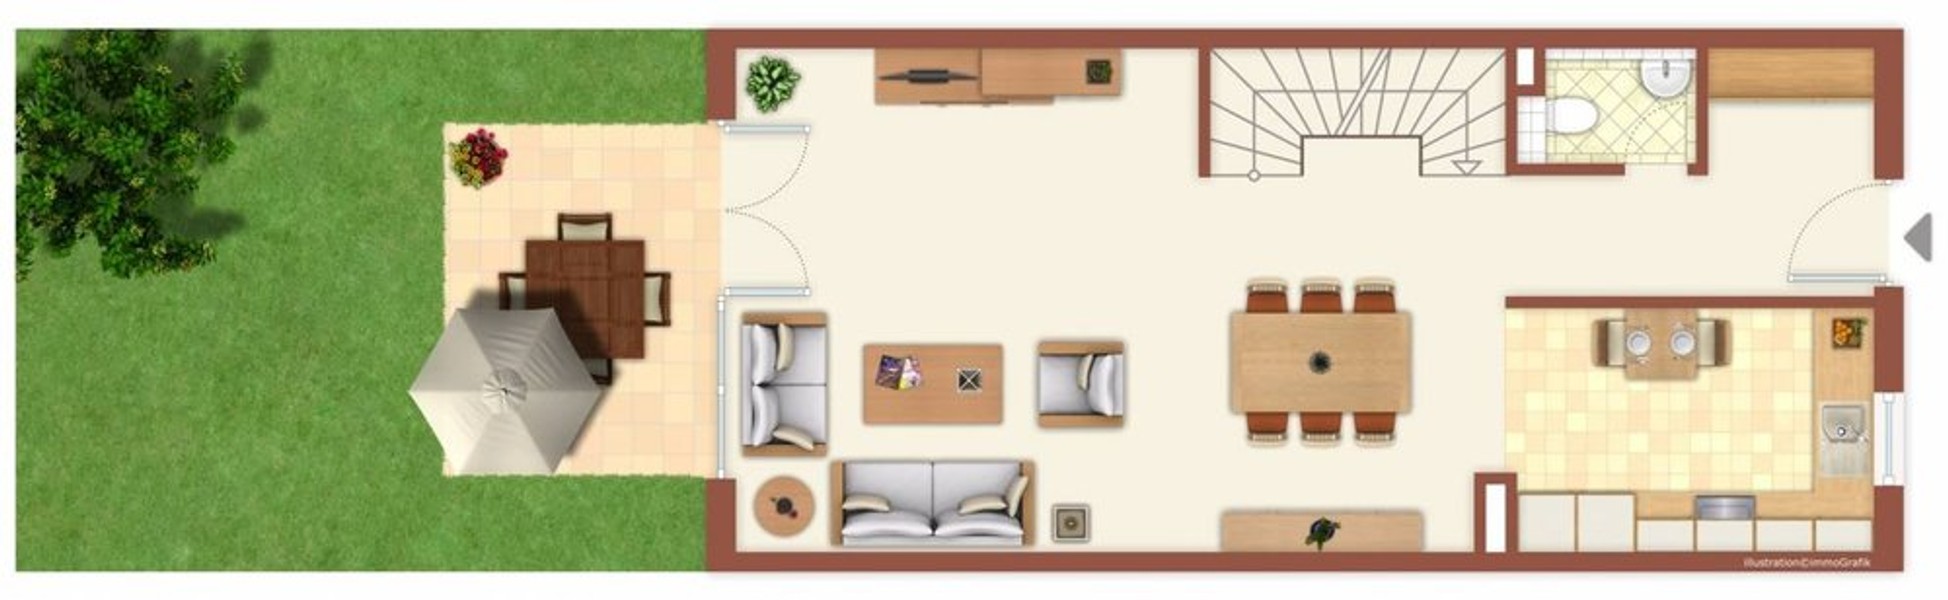 Grundriss EG - Attraktive Maisonettewohnung mit Terrasse und Garten - ideal für eine kleine Familie